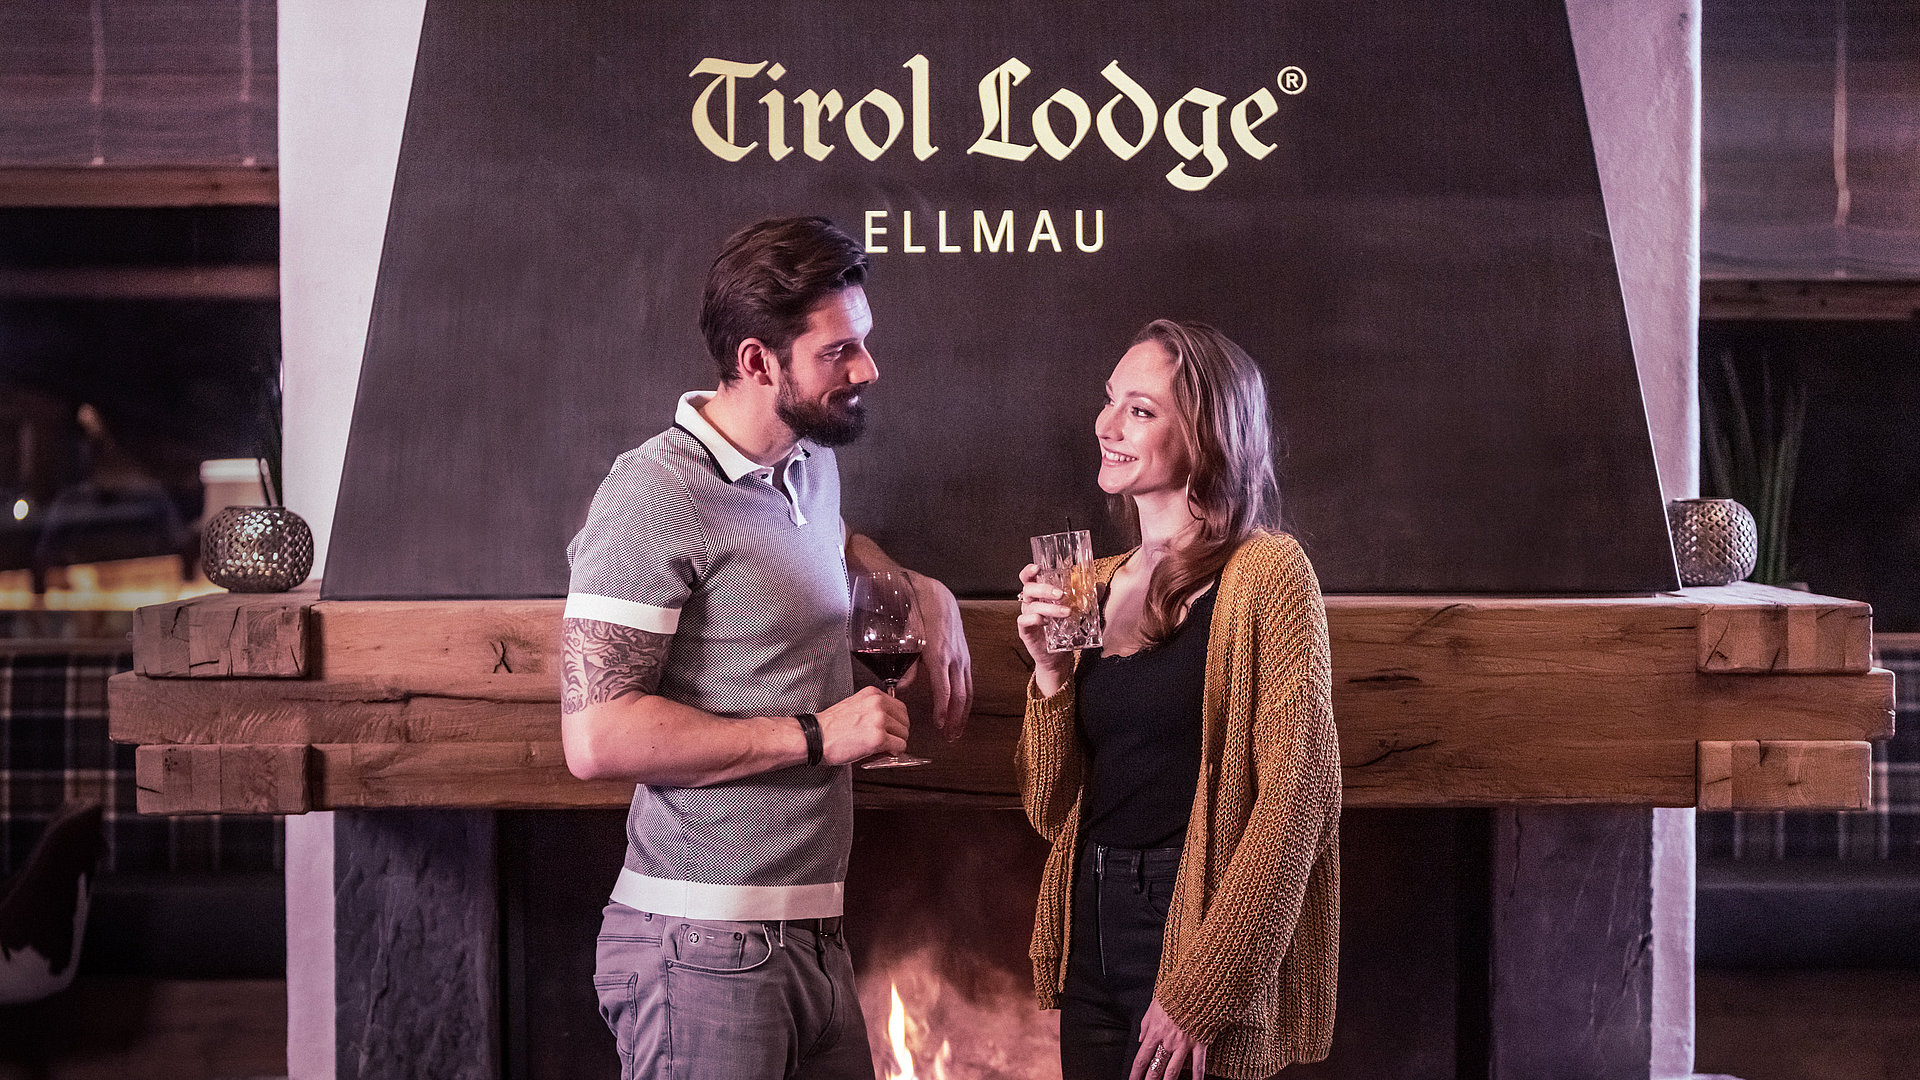 Abend ausklingen lassen in der Tirol Lodge Ellmau